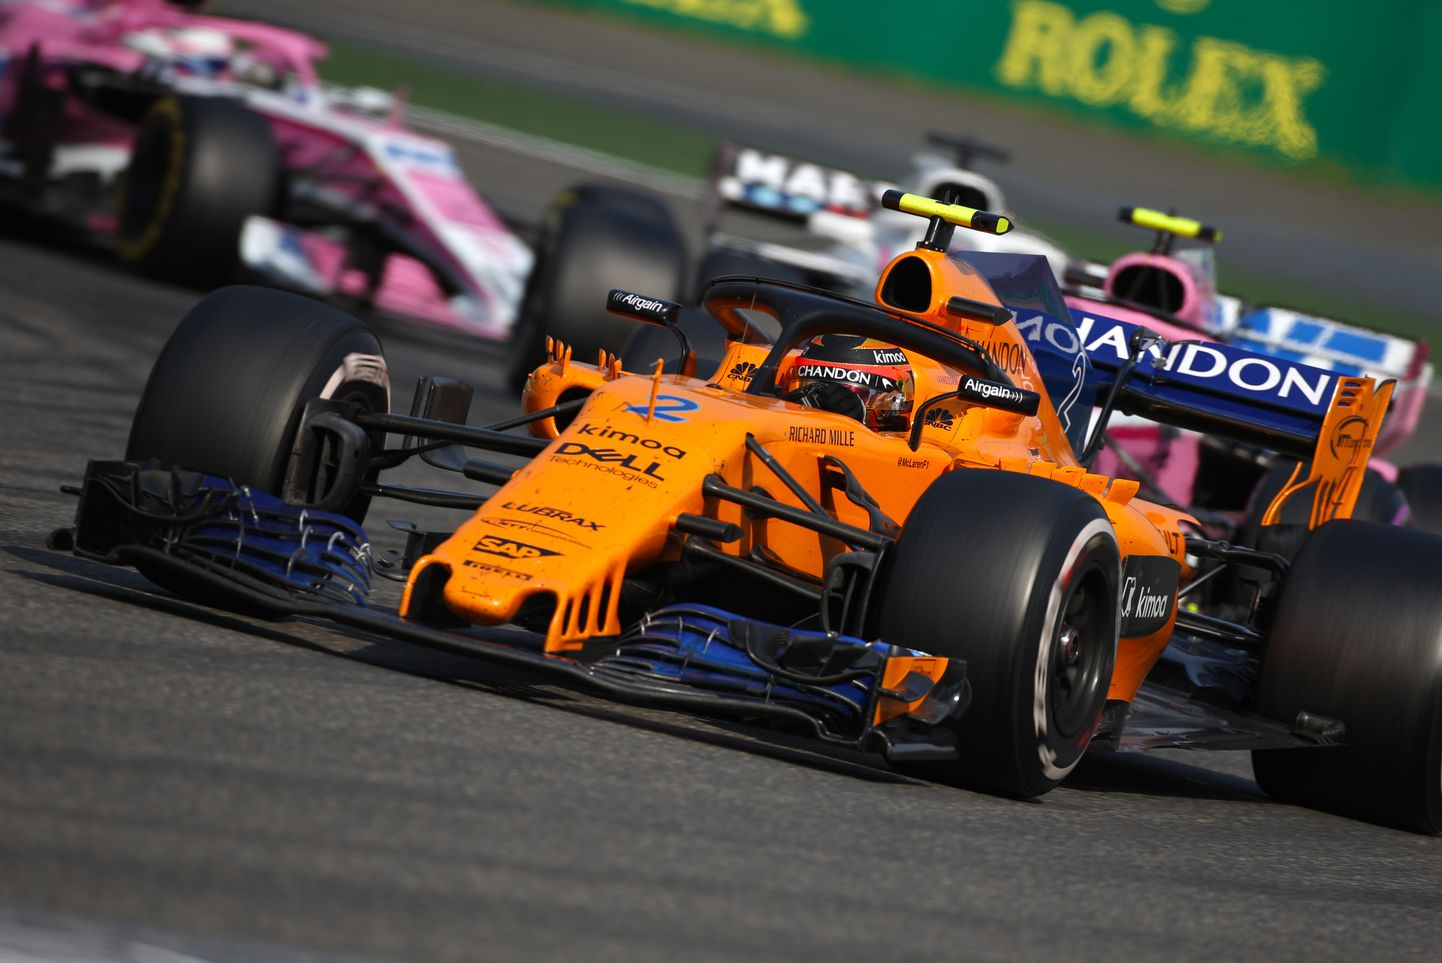 McLareni võistkond pole autode kiirusega rahul ja otsib süüdlasi.